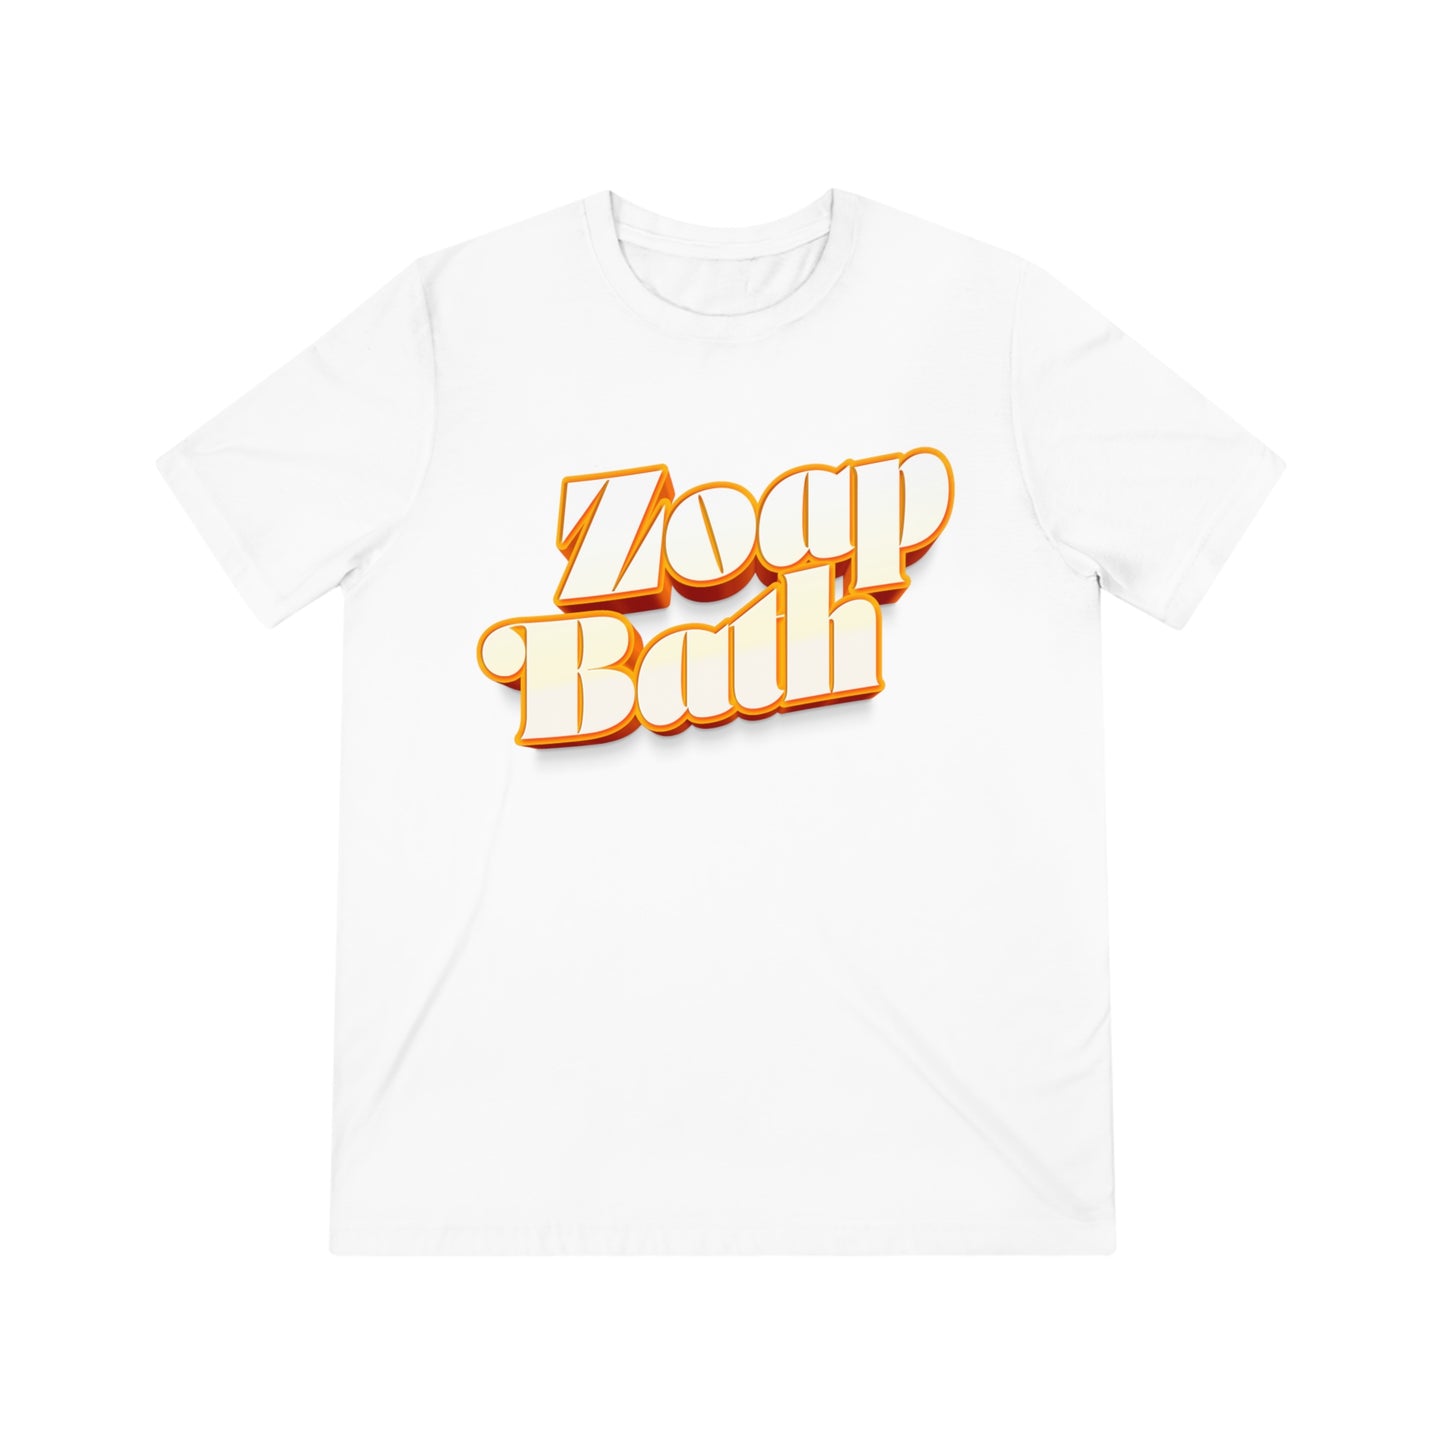 Zoap Bath - T-Shirt